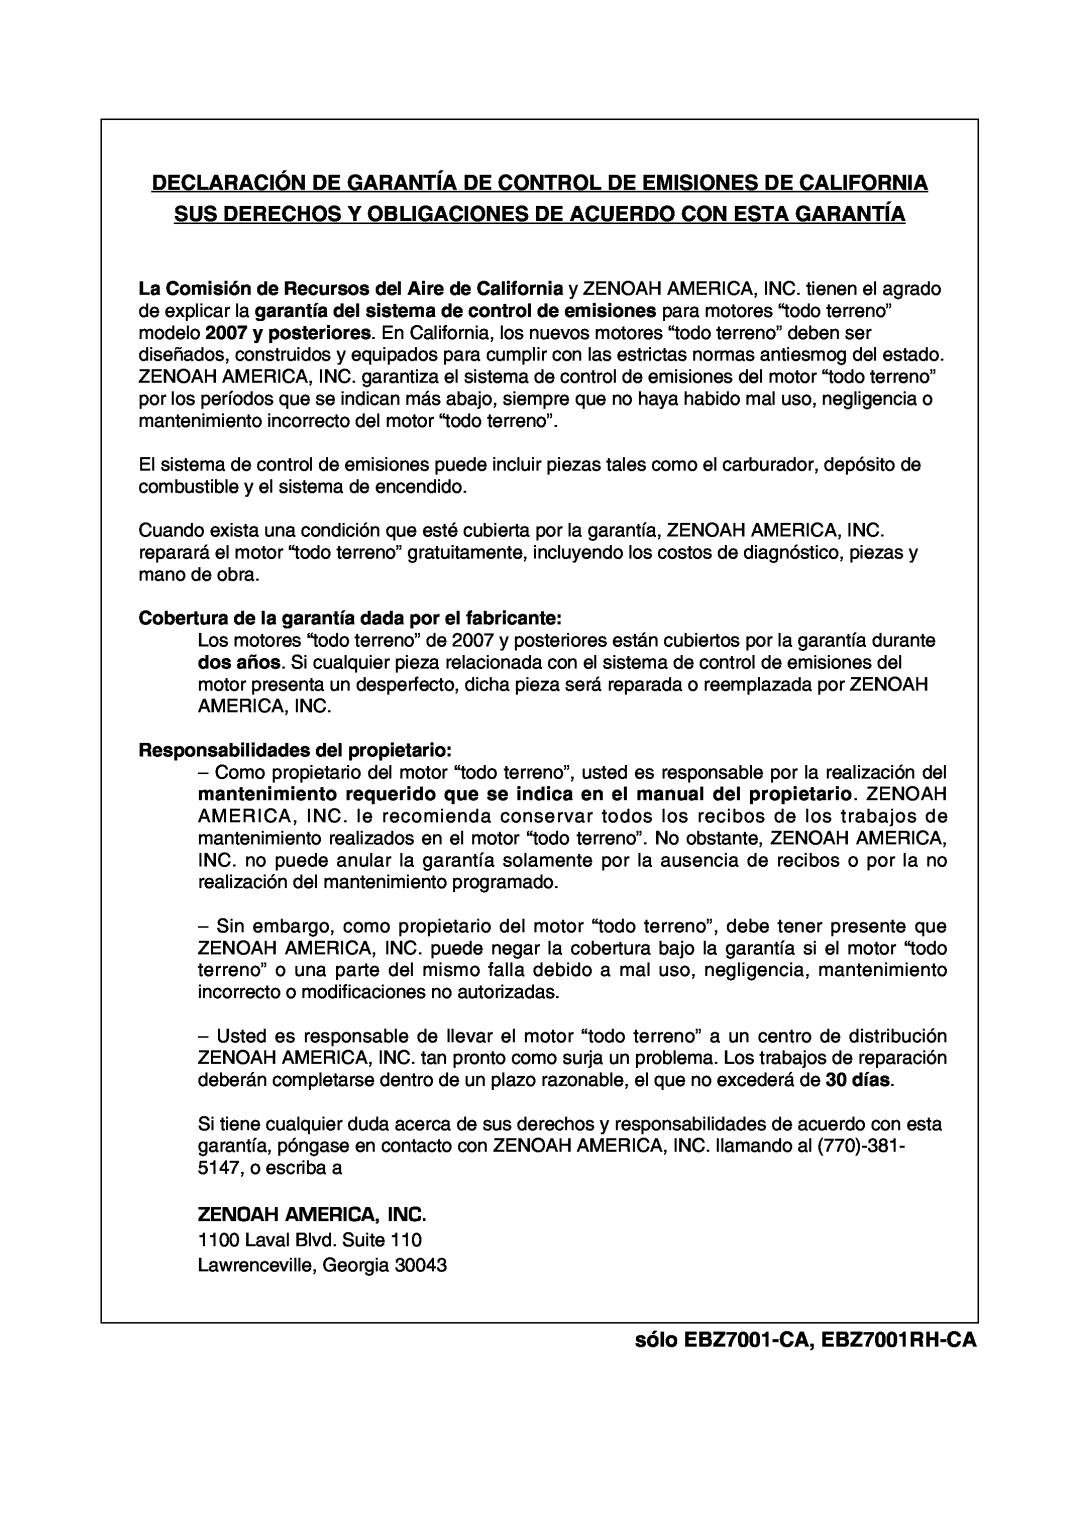 RedMax manual Declaración De Garantía De Control De Emisiones De California, sólo EBZ7001-CA, EBZ7001RH-CA 